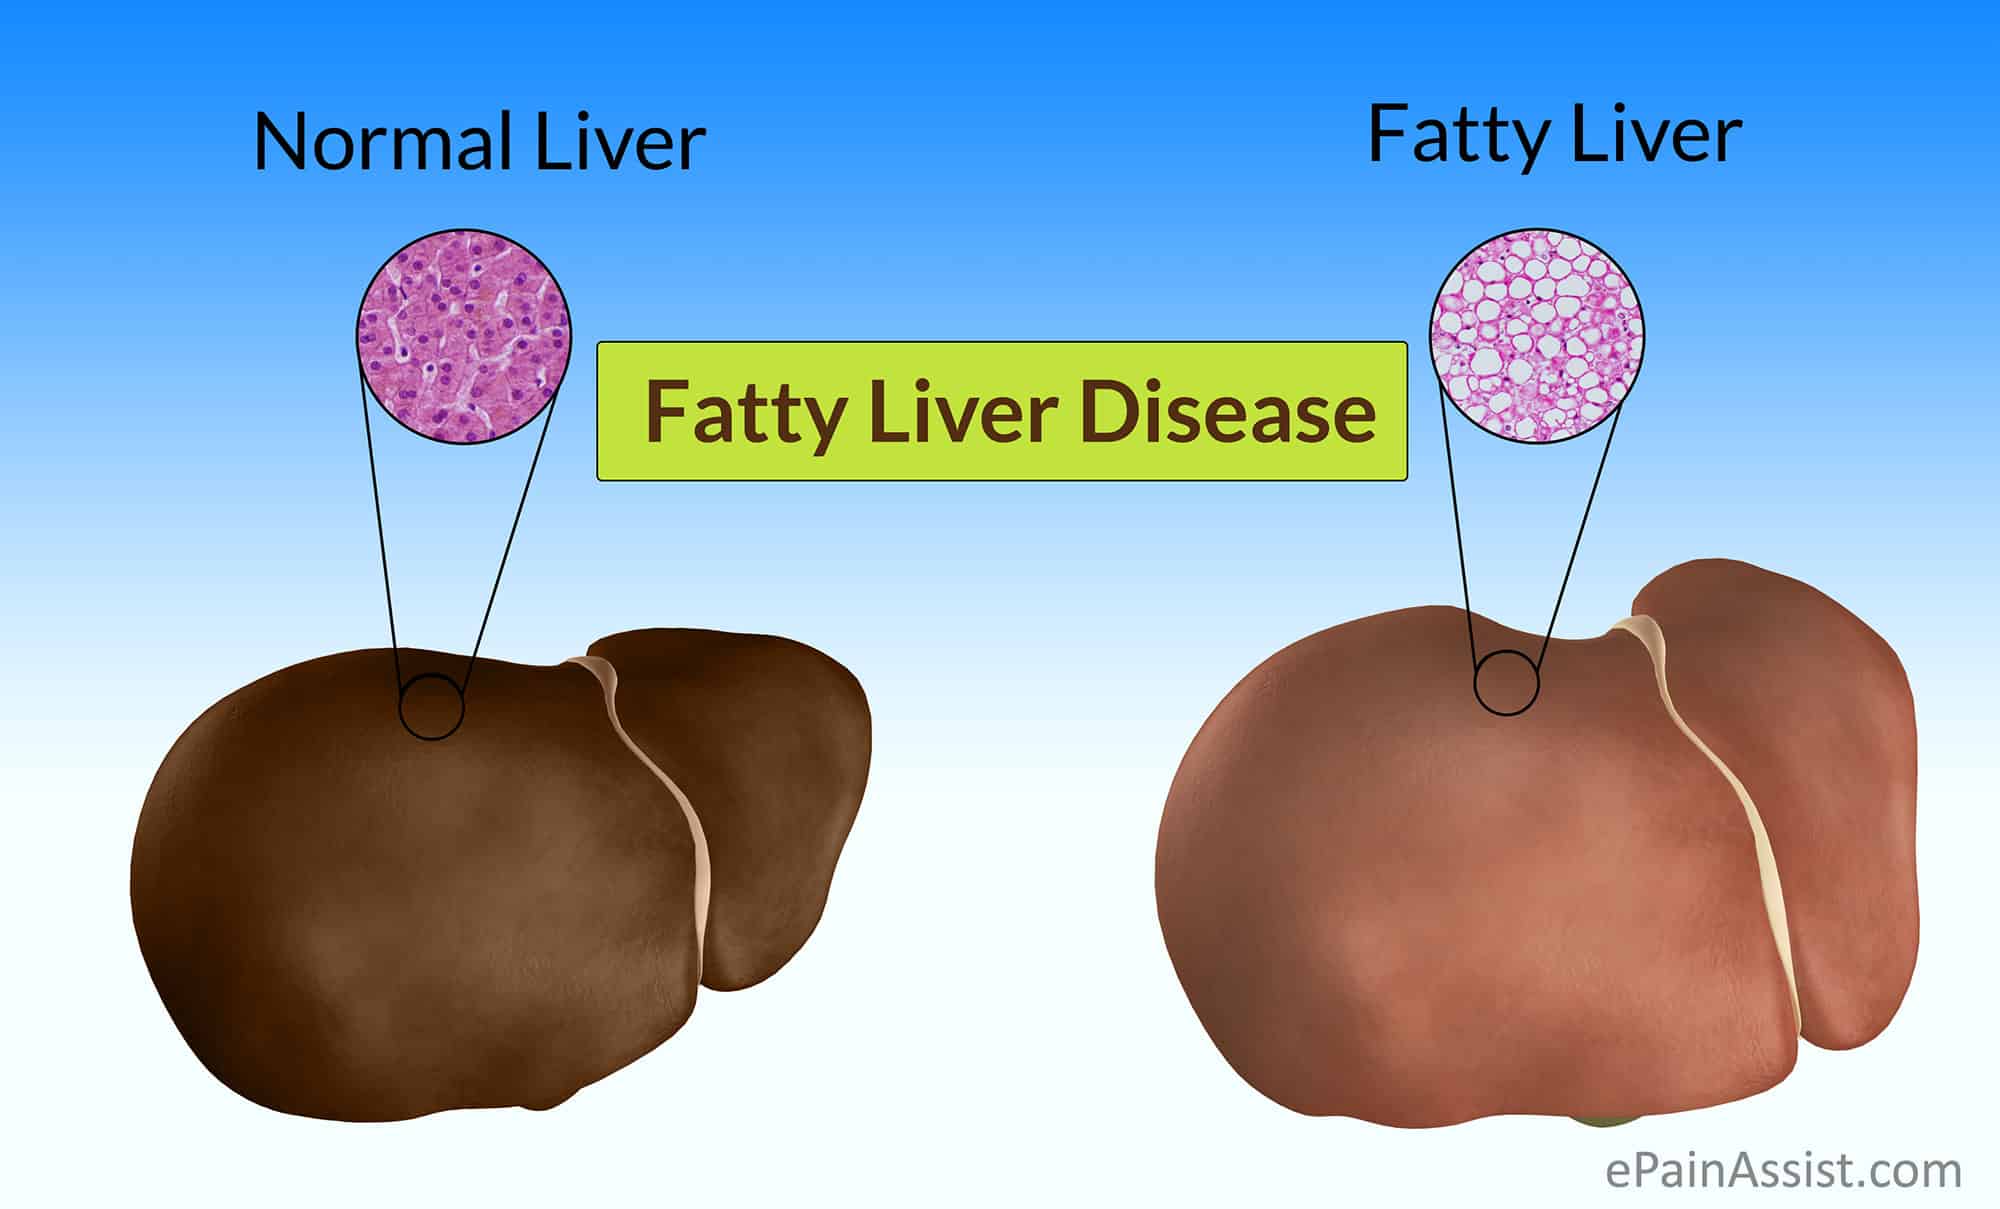 כבד שומני (FL - Fatty Liver) היא מחלה הנגרמת עקב הצטברות של שומן בתאי הכבד מעל הרמה המומלצת